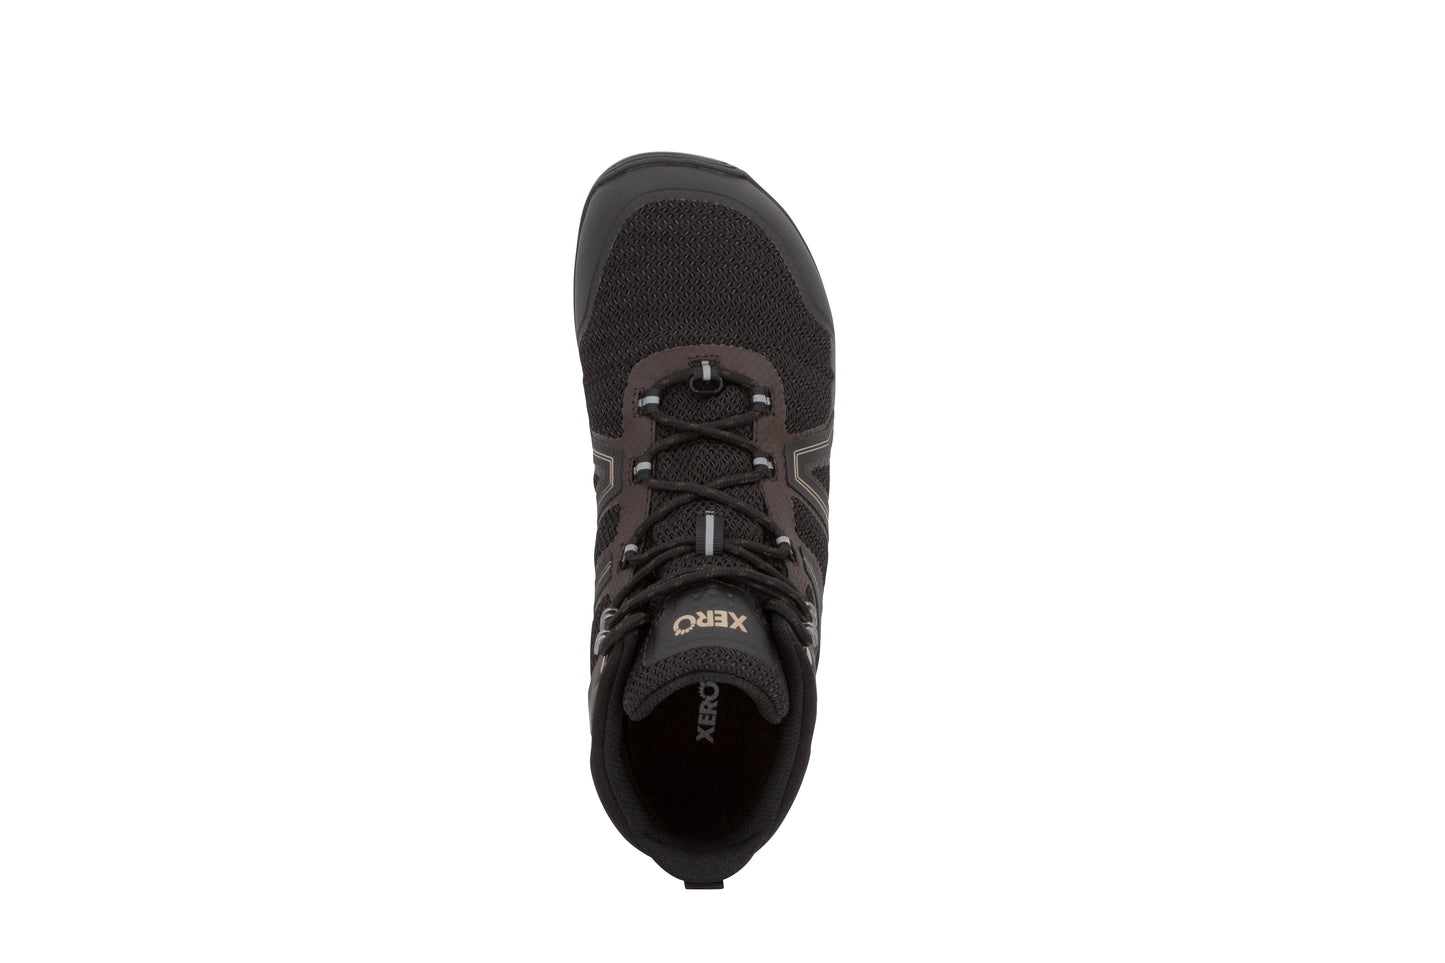 Xero Shoes Xcursion Fusion barfods støvler til mænd i farven bison, top